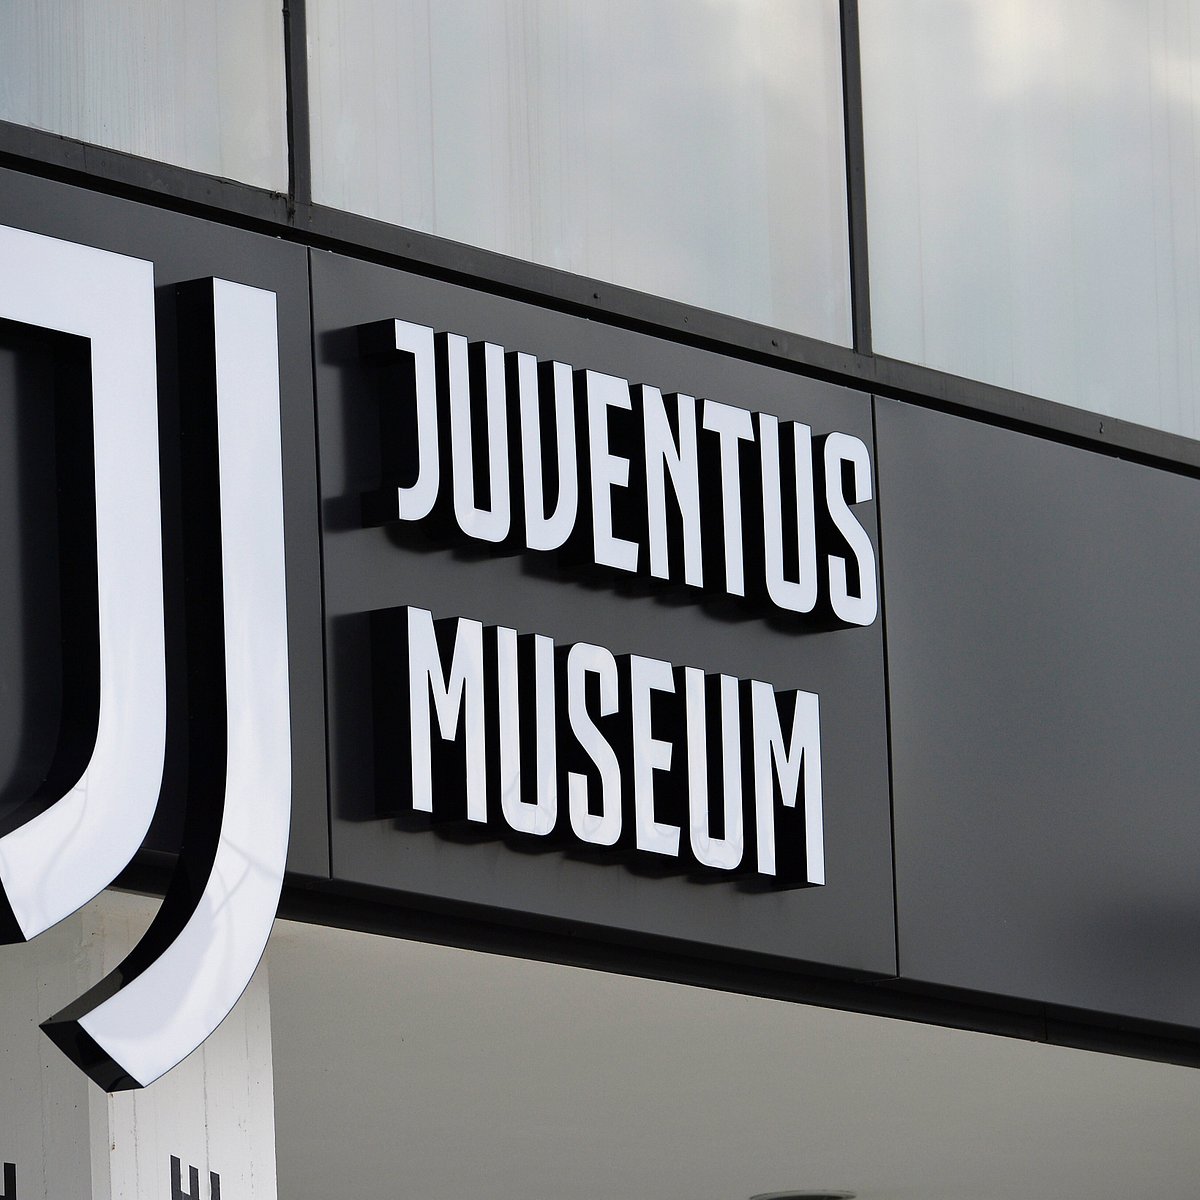 Football trips to Juventus